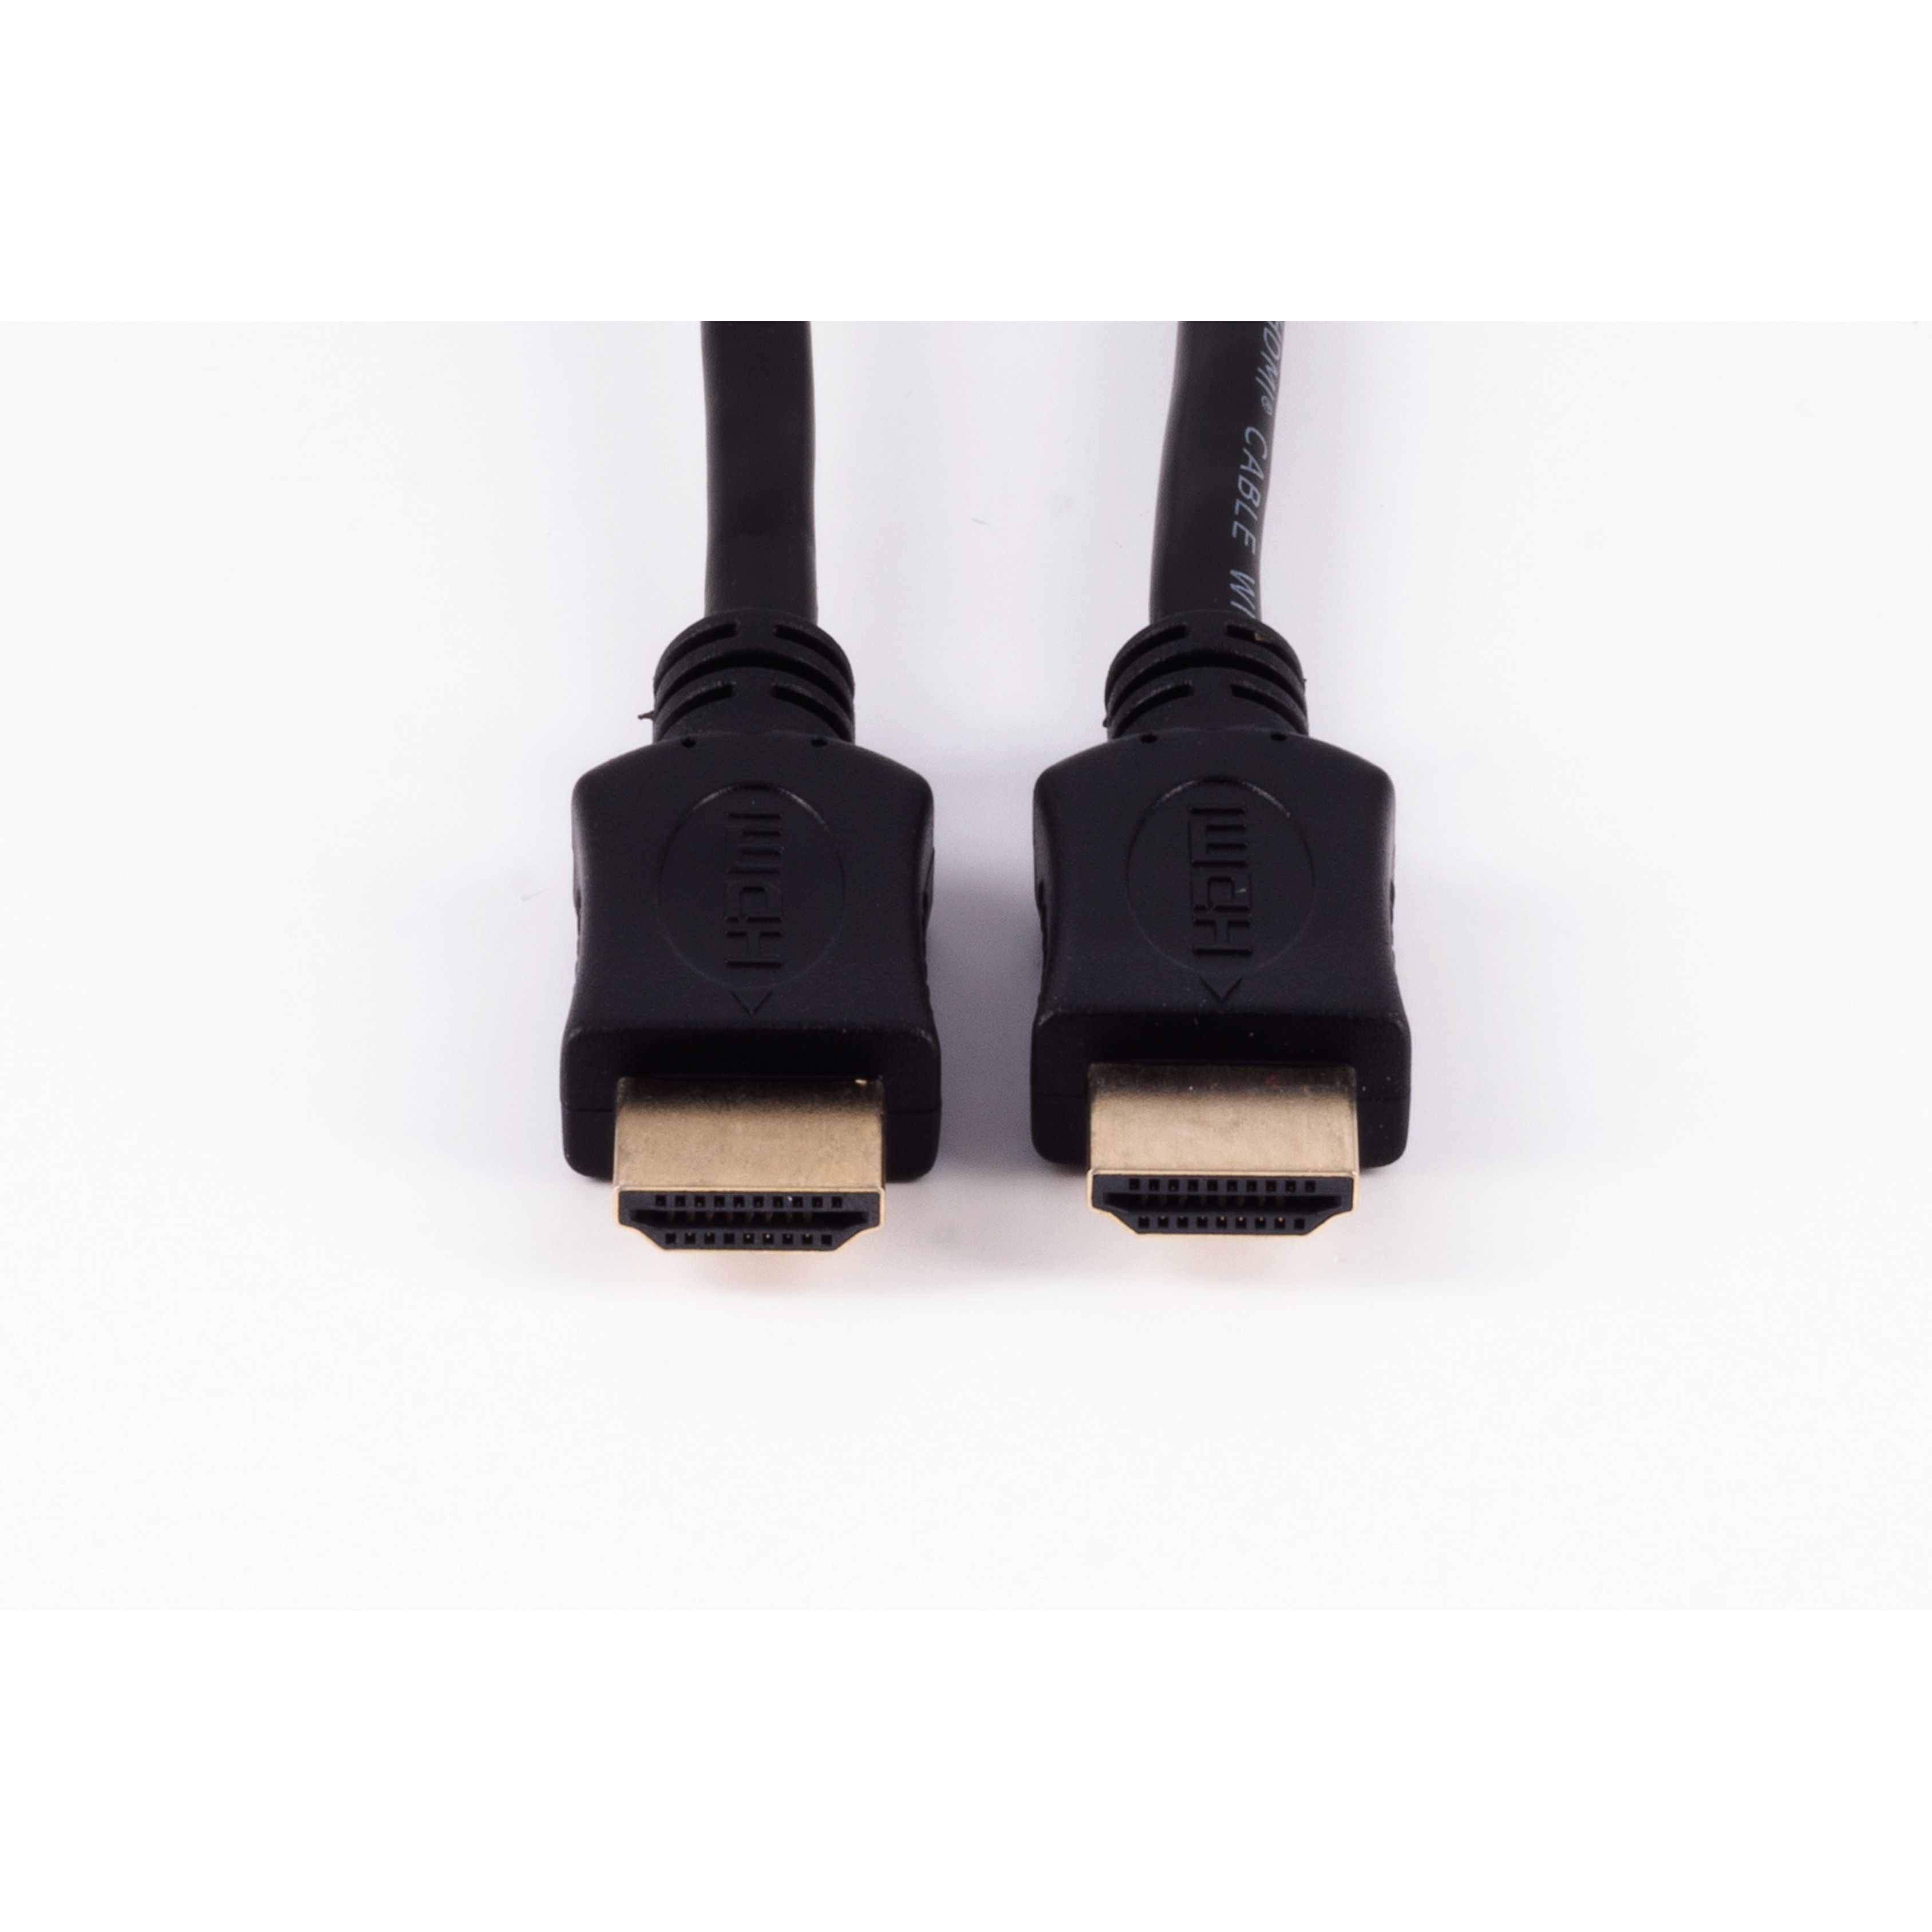 A-Stecker / Kabel A-Stecker HDMI HDMI HDMI SHIVERPEAKS HEAC 2m verg.